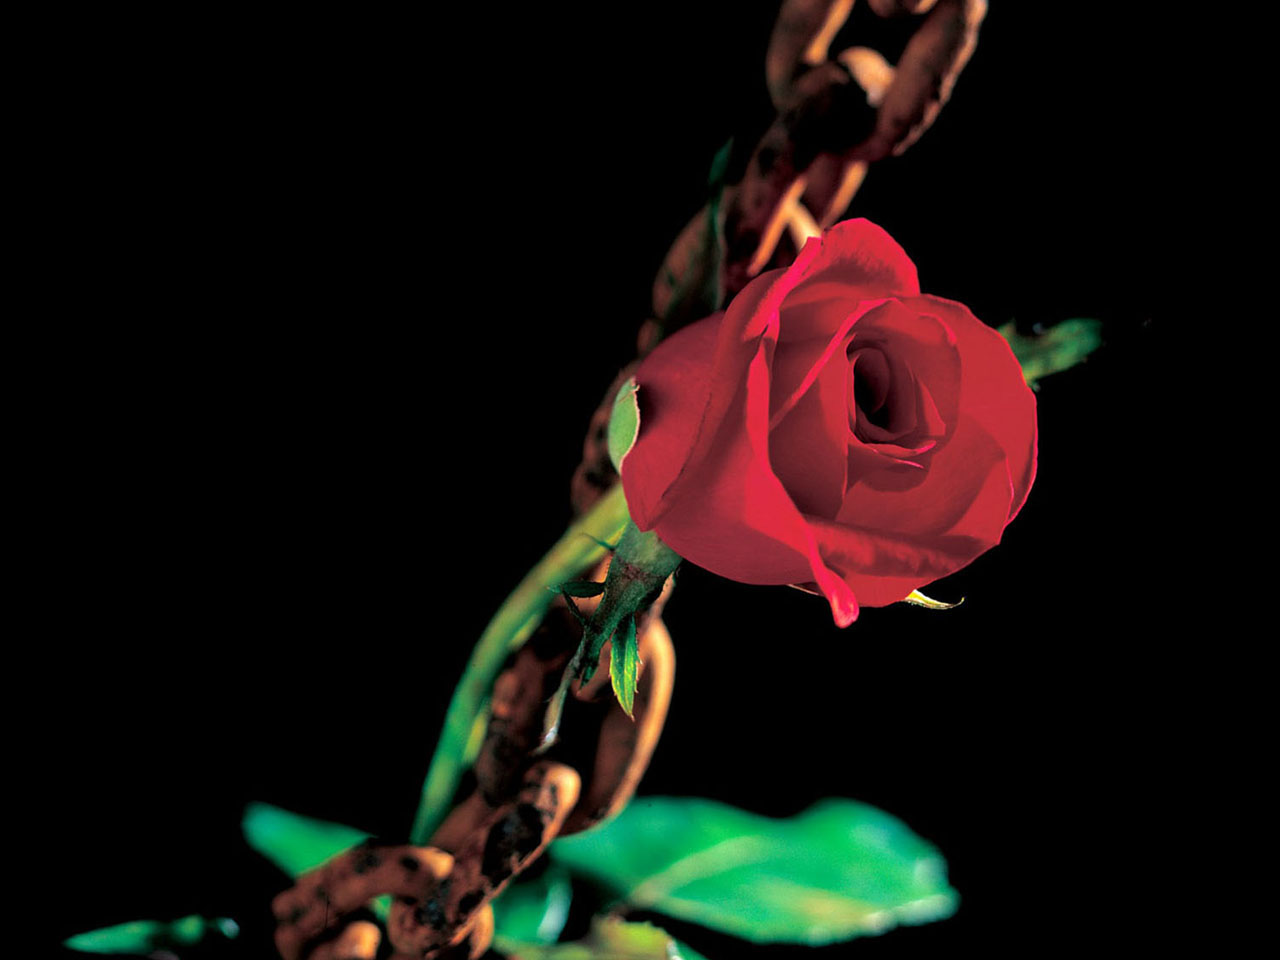 http://4.bp.blogspot.com/-Gco7yShvprM/TdXgpR-yGlI/AAAAAAAAAQI/Nzy1q2fgJJg/s1600/romantic+flowers_+%25286%2529.jpg